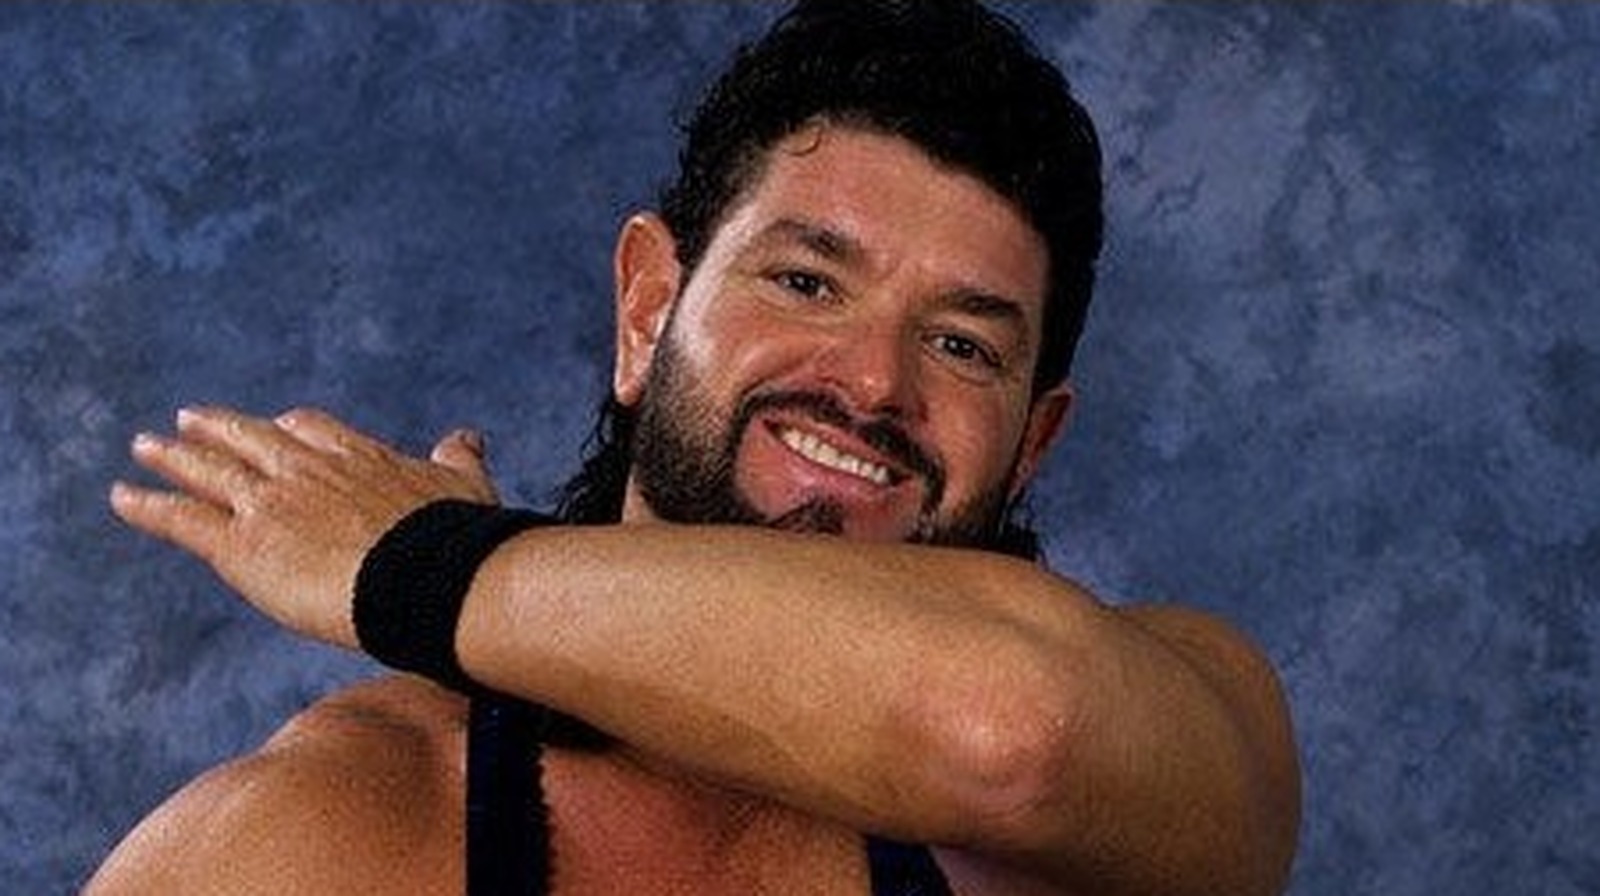 El legendario talento WWE Enhancement debuta en Impact